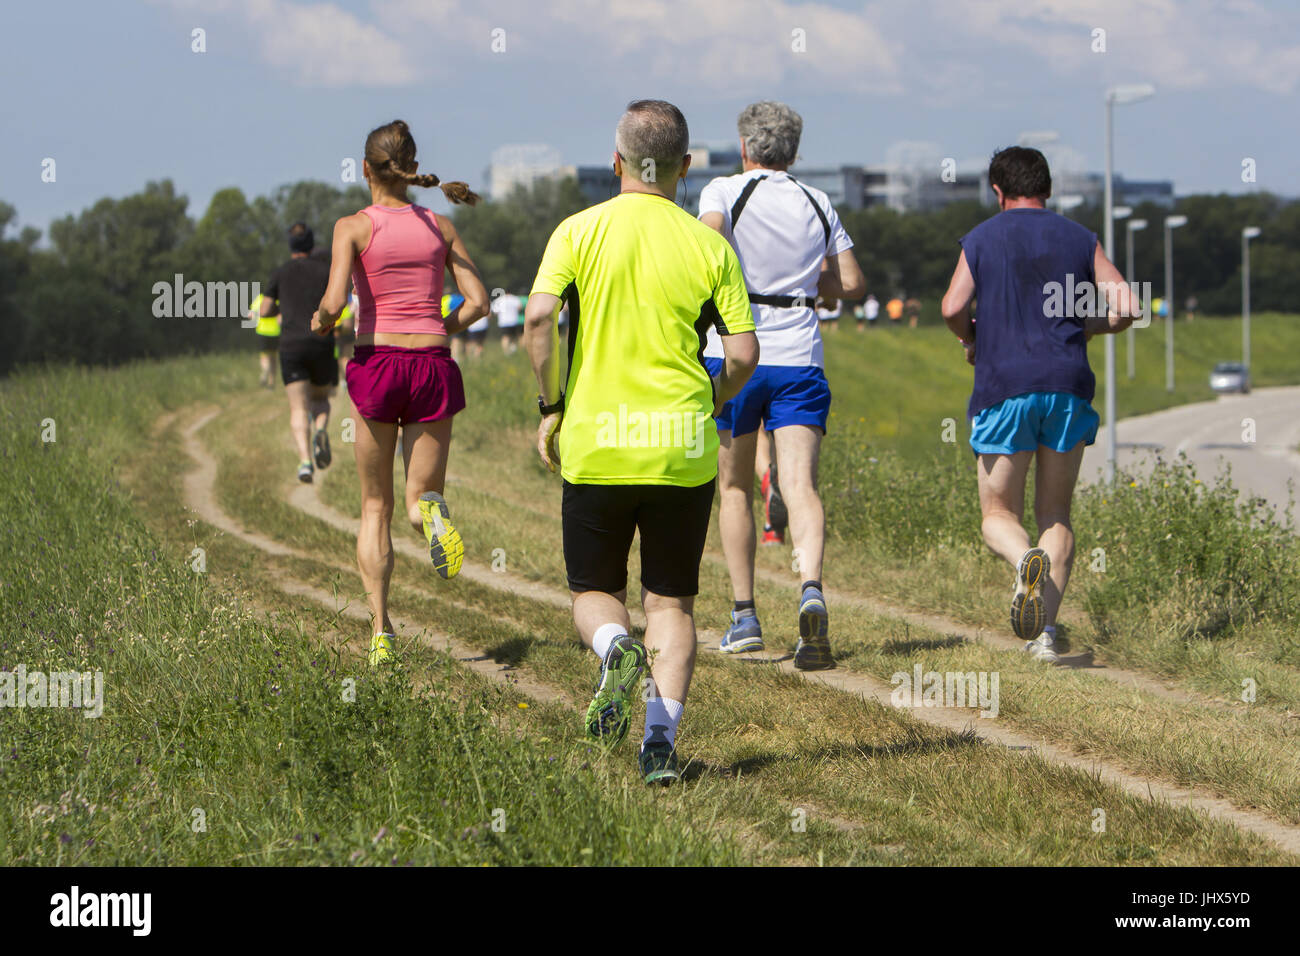 Grupo de jóvenes al aire libre corriendo maratón cross-country Foto de stock